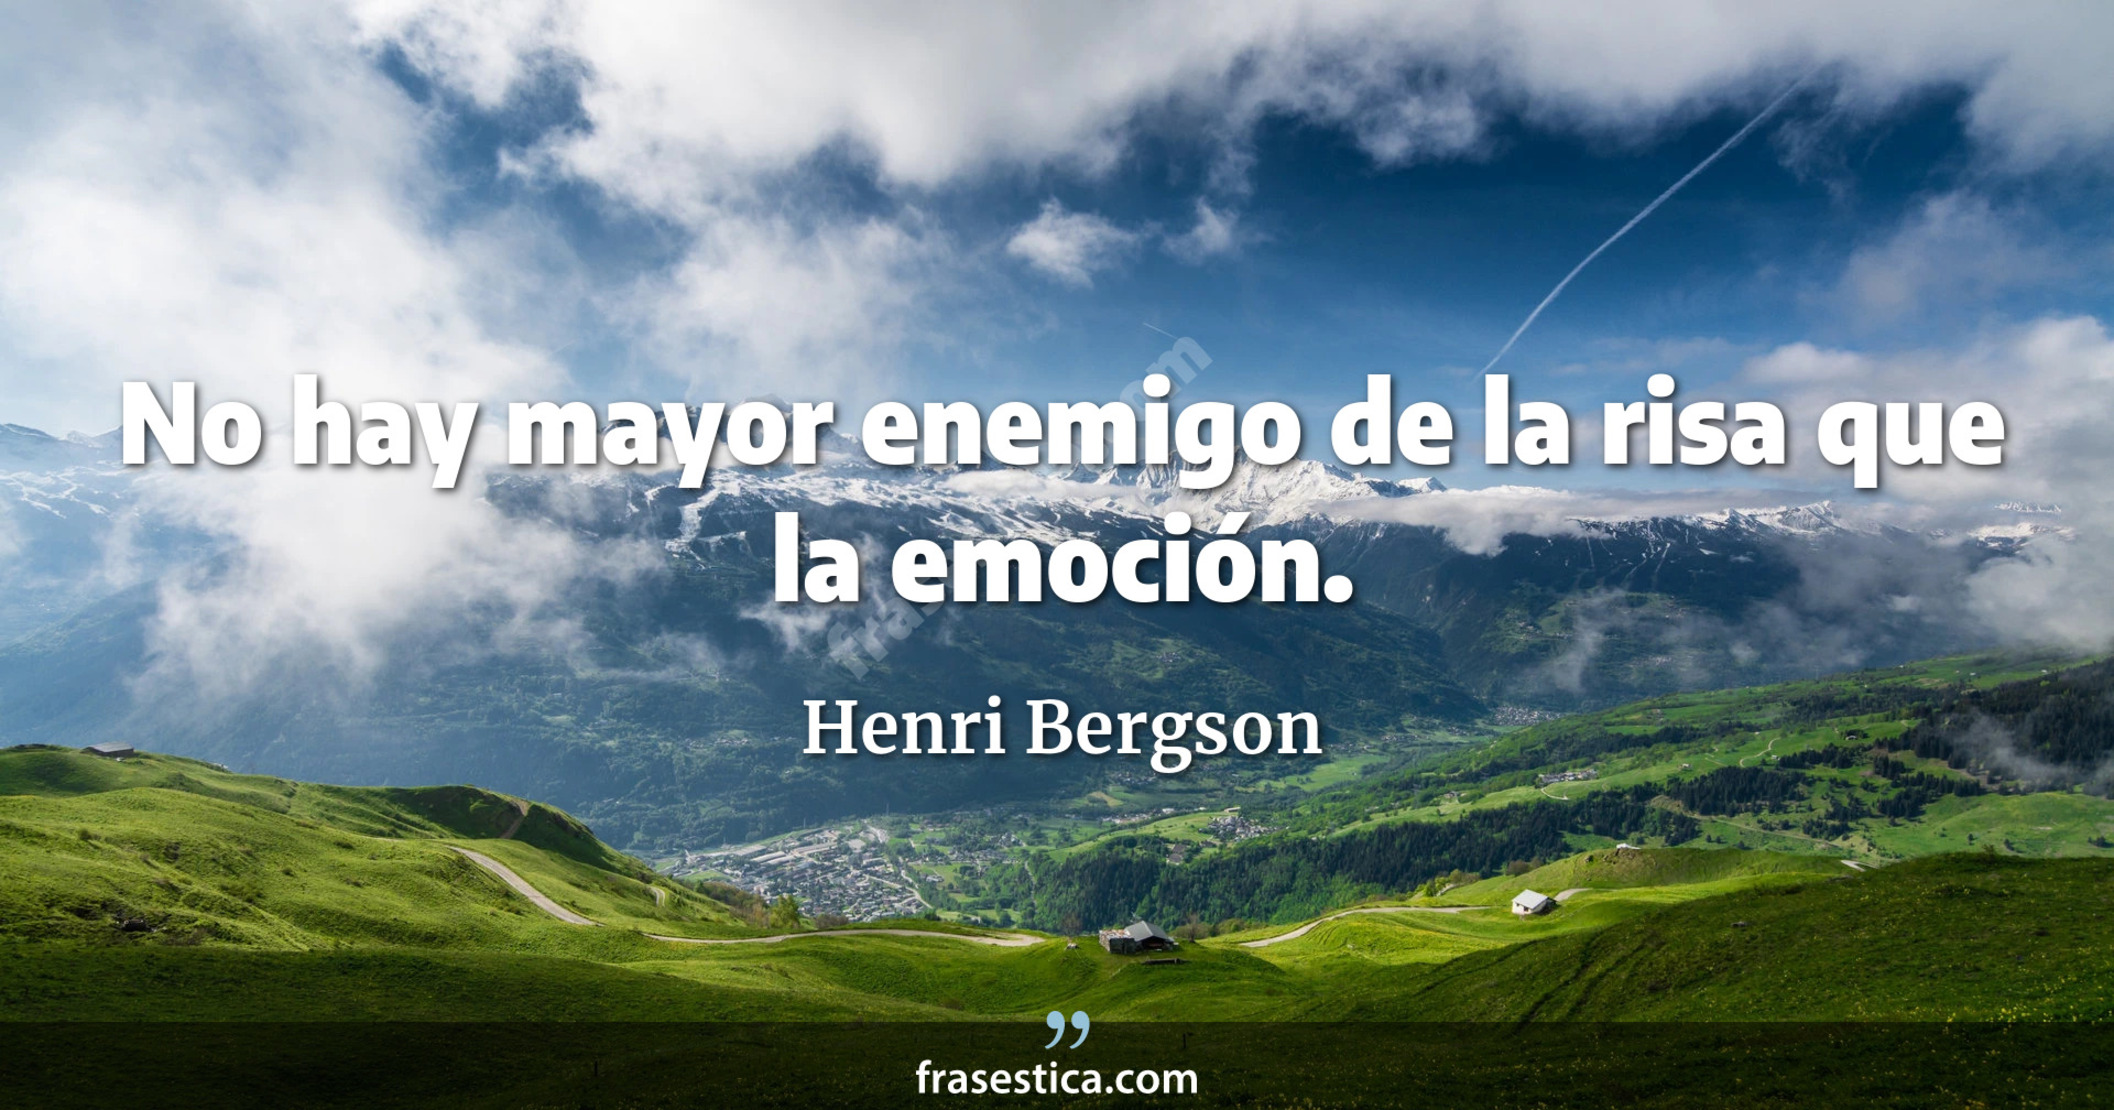 No hay mayor enemigo de la risa que la emoción. - Henri Bergson